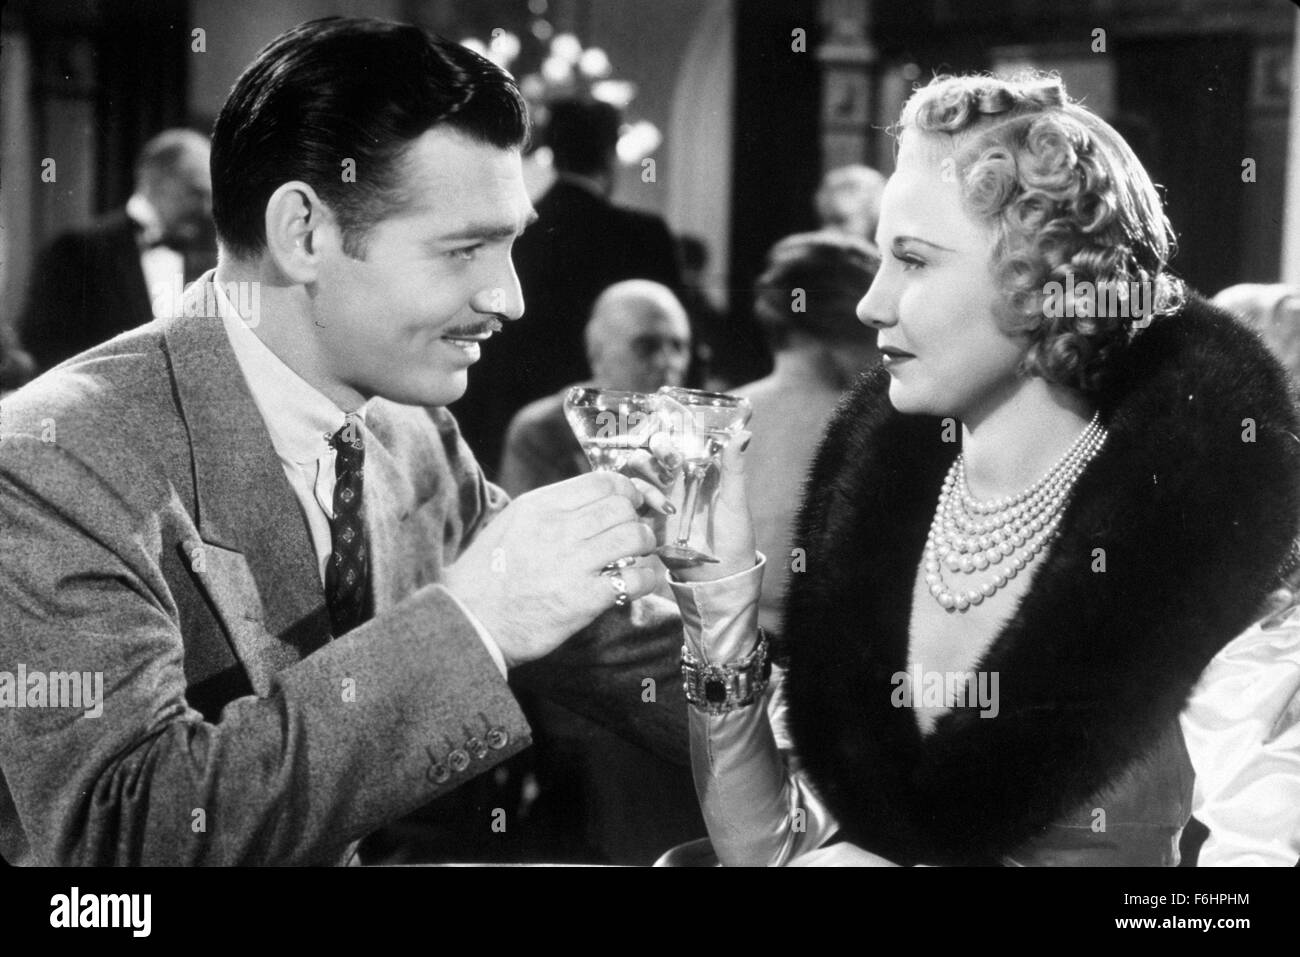 1937, le titre du film : SARATOGA, Directeur : JACK CONWAY, Studio : MGM, Photo : Clark Gable, UNA MERKEL, TOASTING DRINKS, Martini, de boire, de regard, col de fourrure, de même. (Crédit Image : SNAP) Banque D'Images